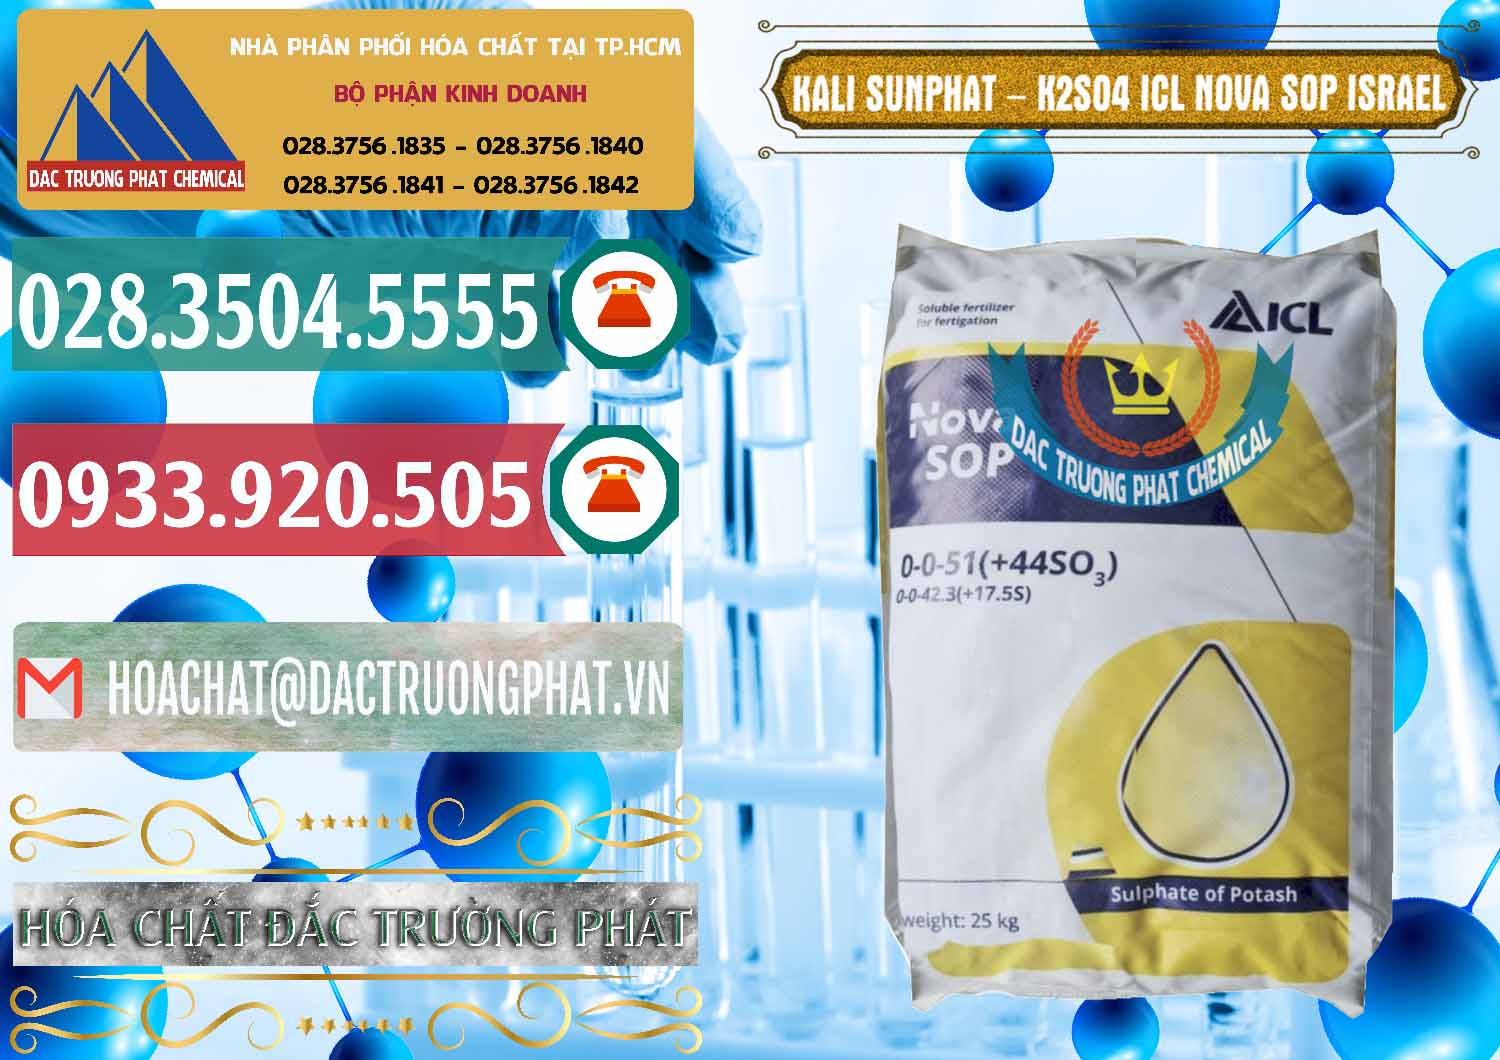 Chuyên bán ( phân phối ) Kali Sunphat – K2SO4 ICL NOVA SOP Israel - 0295 - Công ty nhập khẩu và phân phối hóa chất tại TP.HCM - muabanhoachat.vn